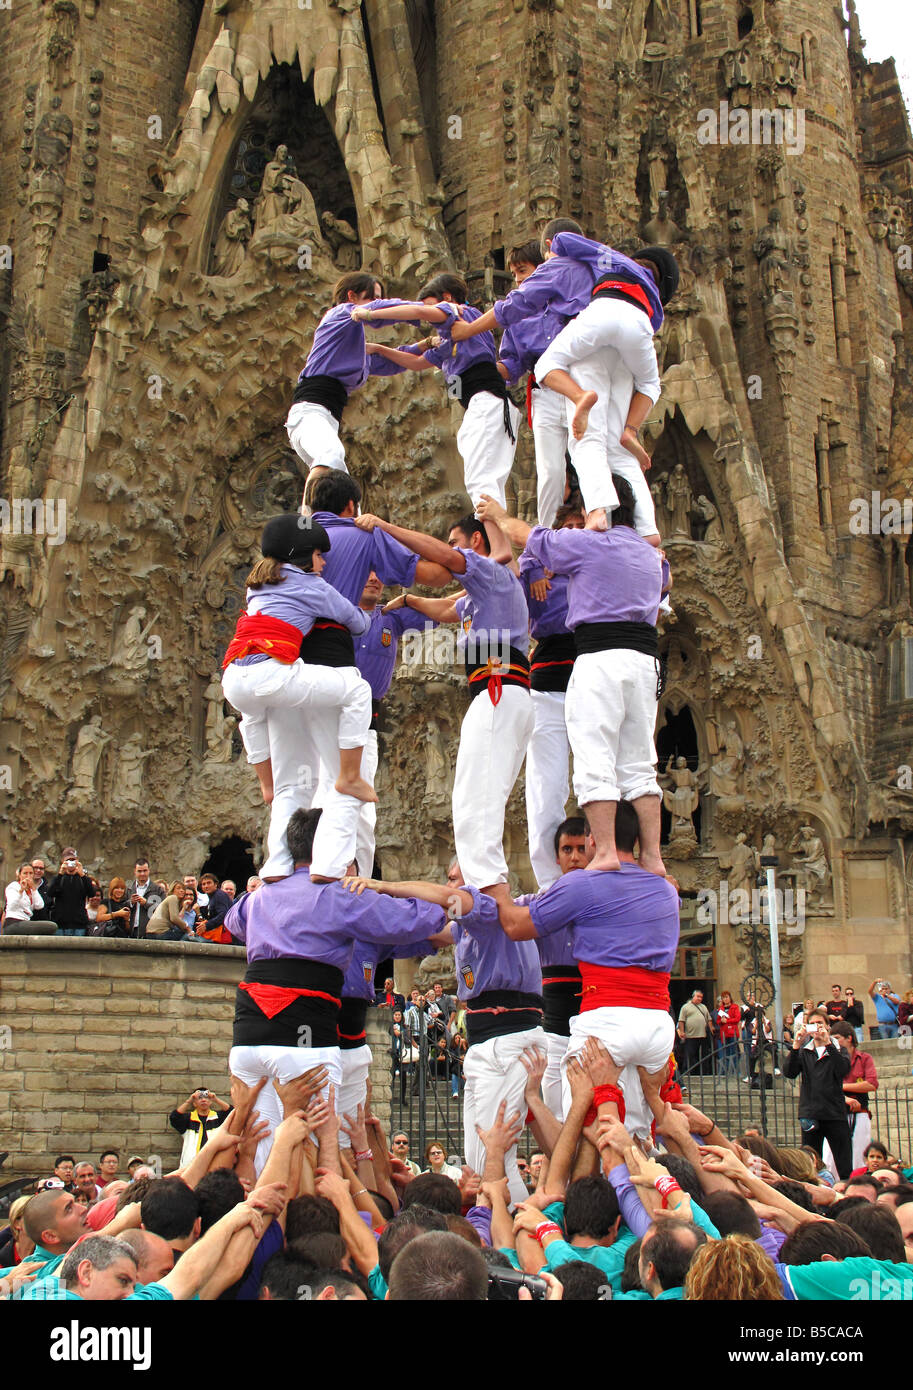 Castellers les capacités humaines tower(castell) à l'extérieur de Gaudi, La Sagrada Familia, Barcelone, Espagne Banque D'Images